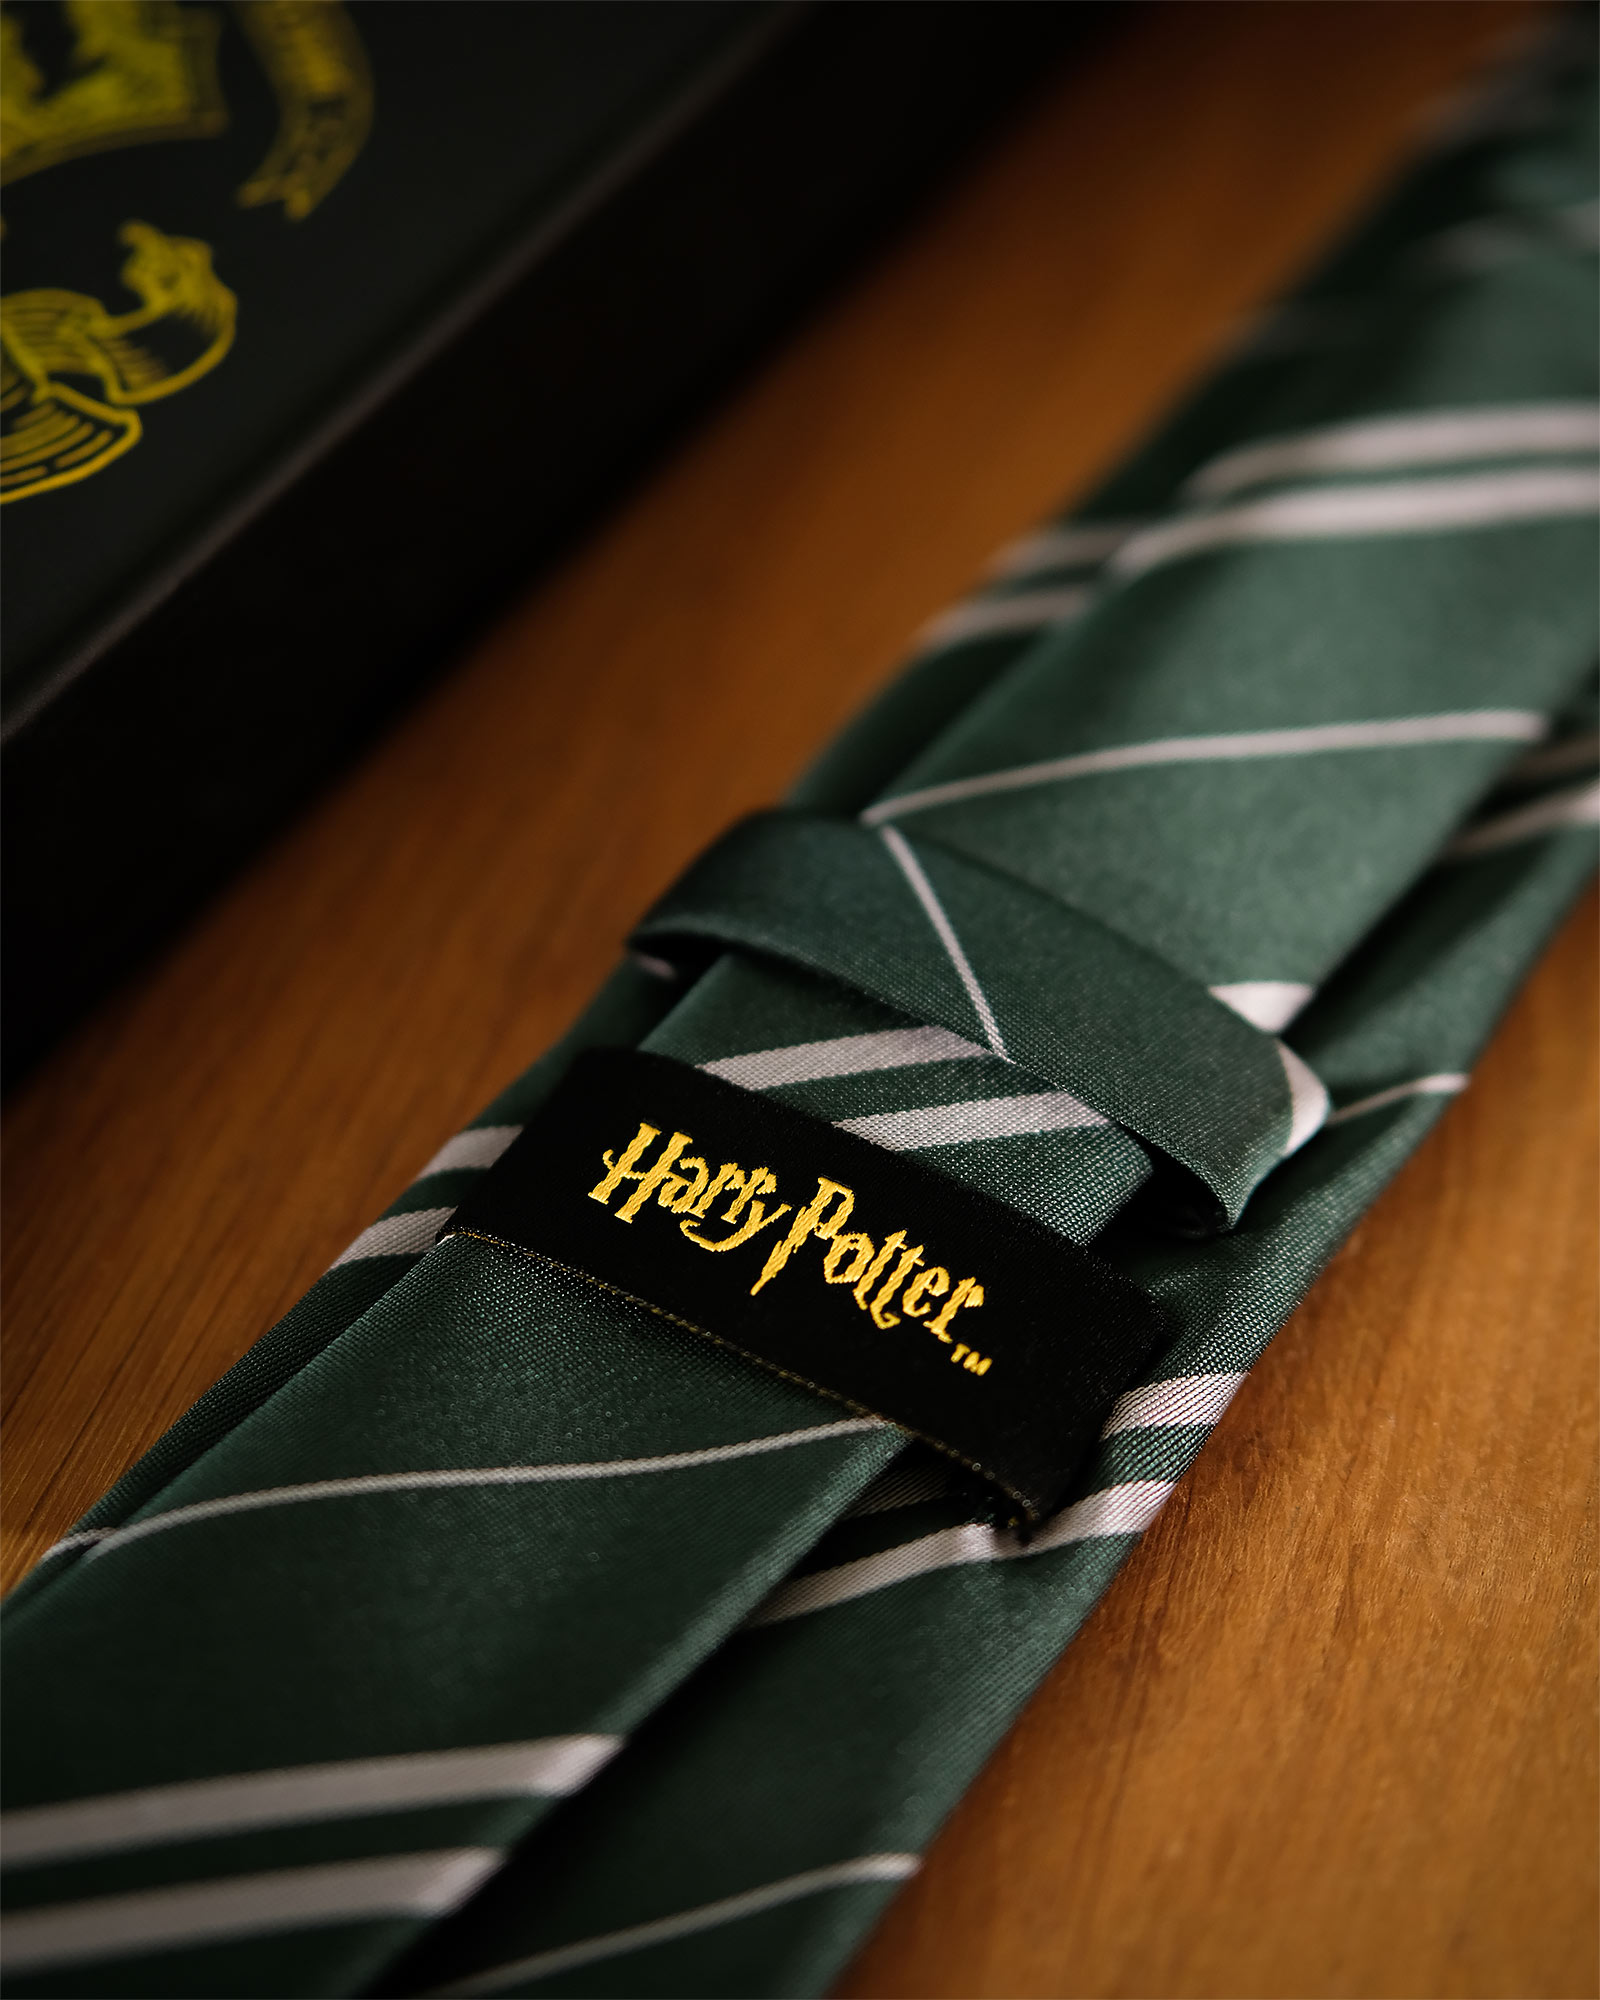 Harry Potter - Slytherin Krawatte mit Geschenkbox